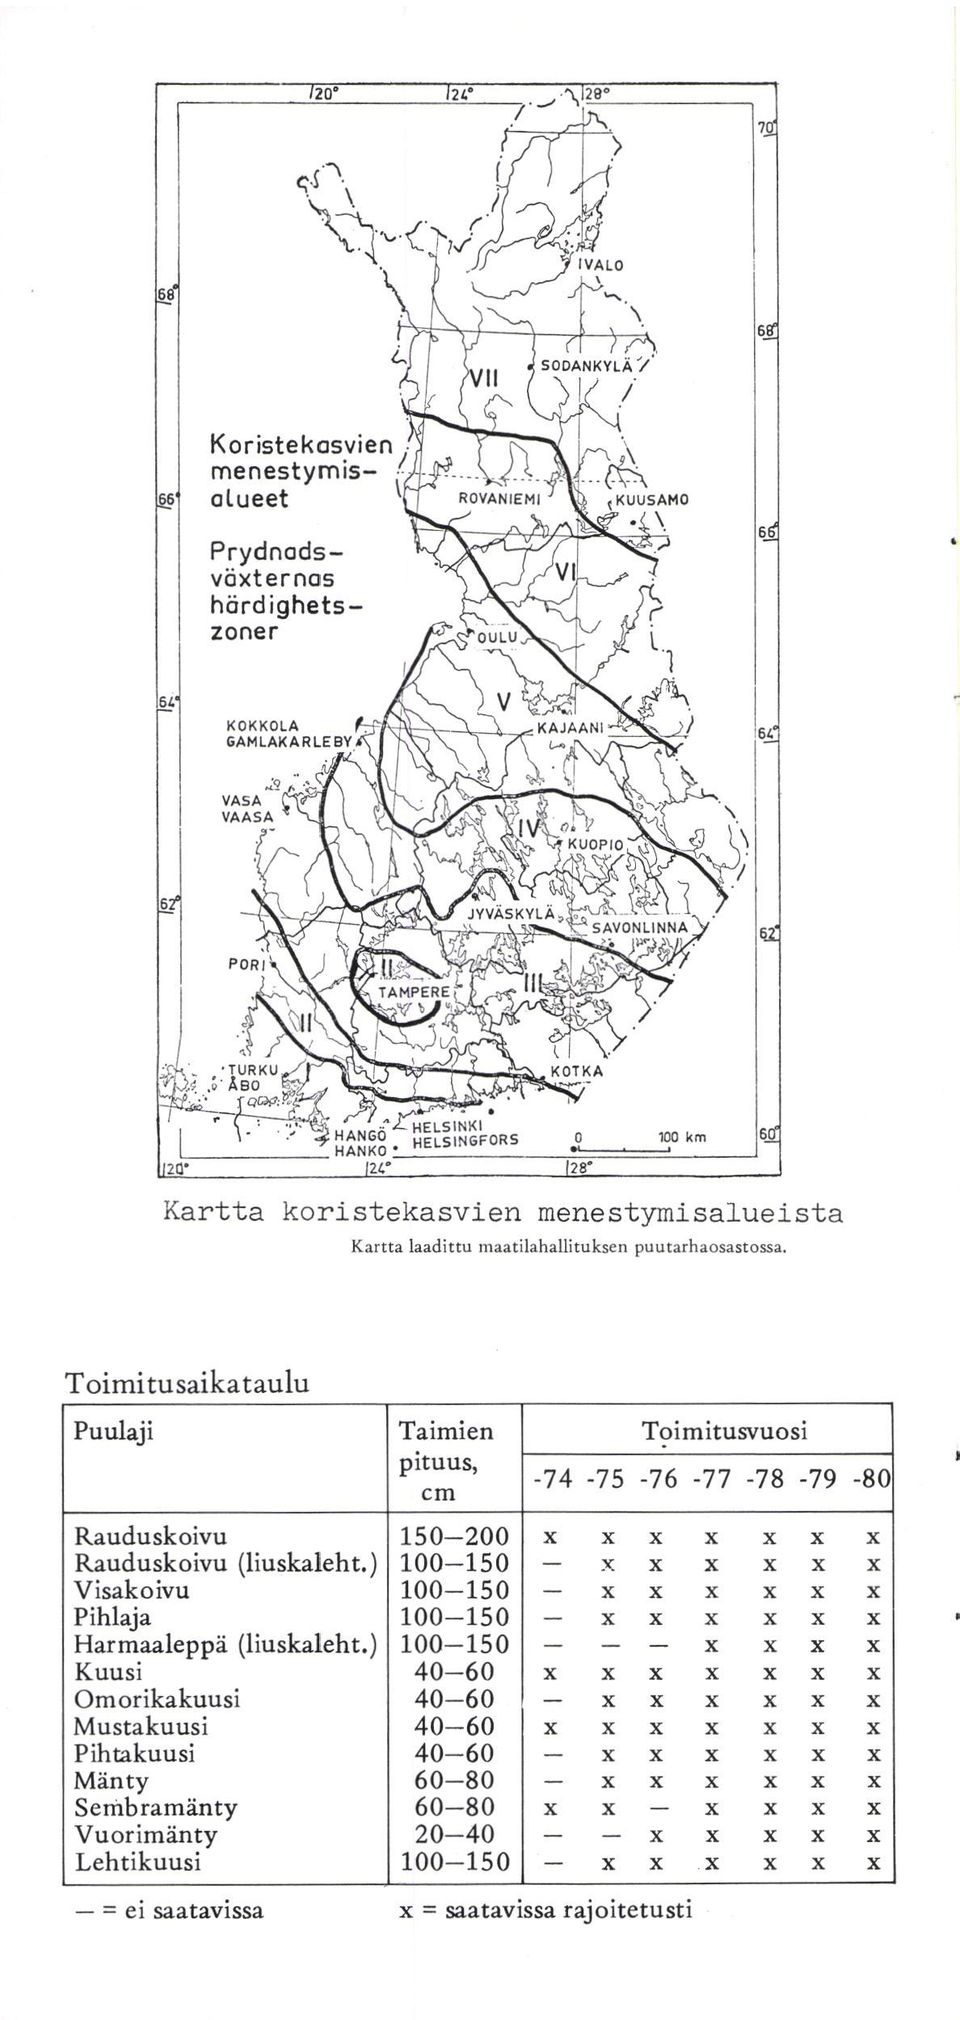 100-150 Pihla 100-150 Harmaaleppä (liuskaleht.) 100-150 (liuskaleht.